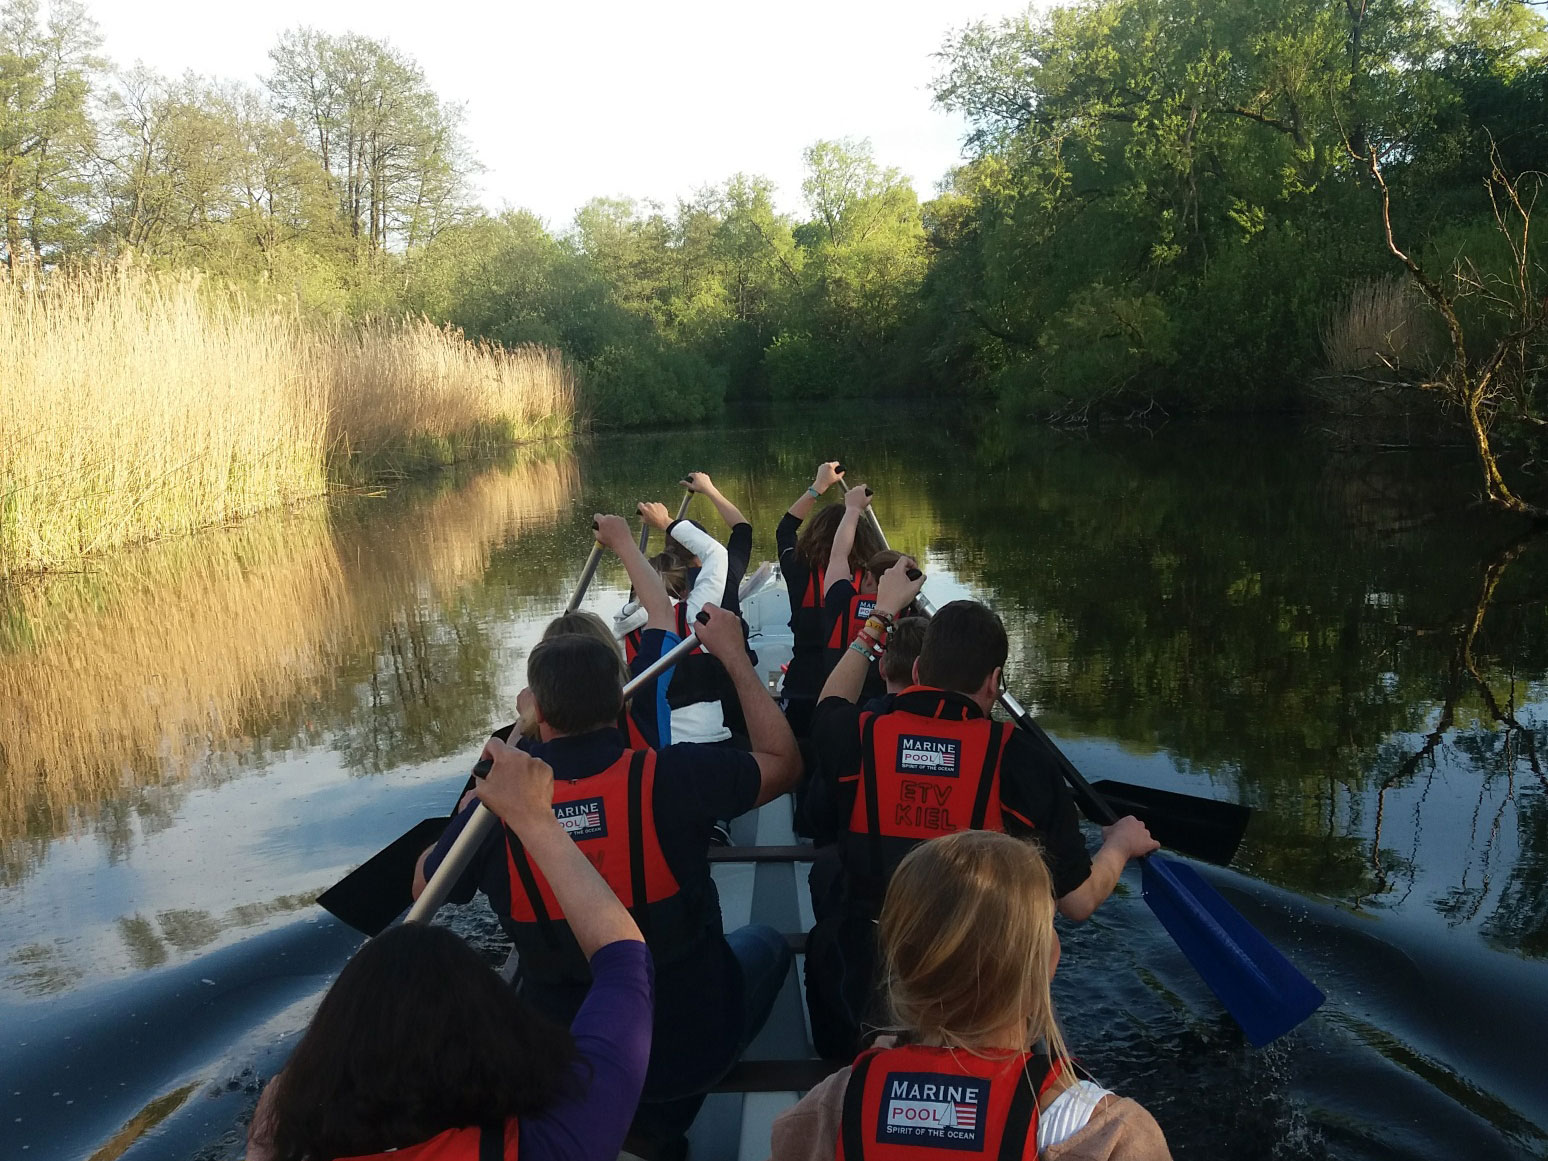 Eine Gruppe Studierender paddelt in einem Kanu einen Fluss entlang, alle heben Ihr paddel um zu nächsten Zug auszuholen.